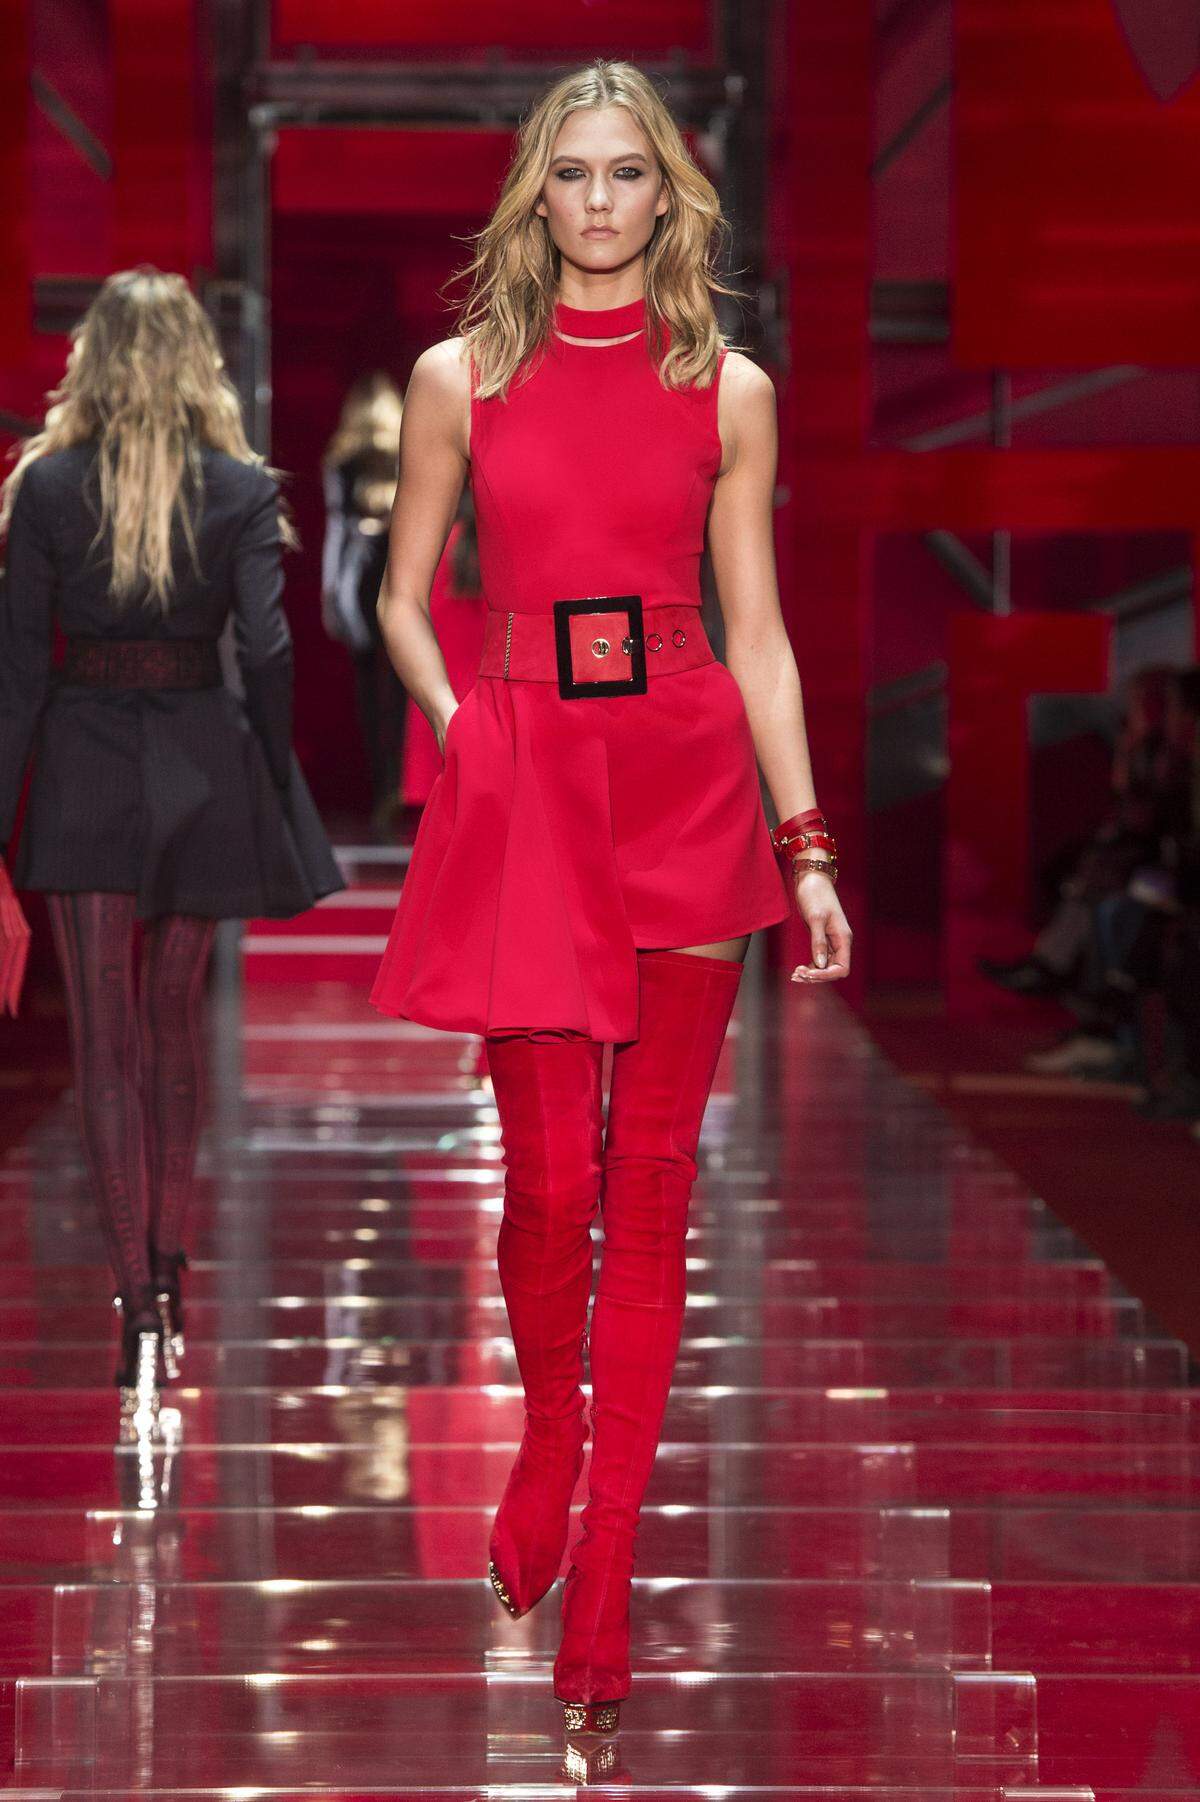 Overkneestiefel aus Veloursleder kombiniert mit einem assymetrischen Minikleid. Alles von Versace.